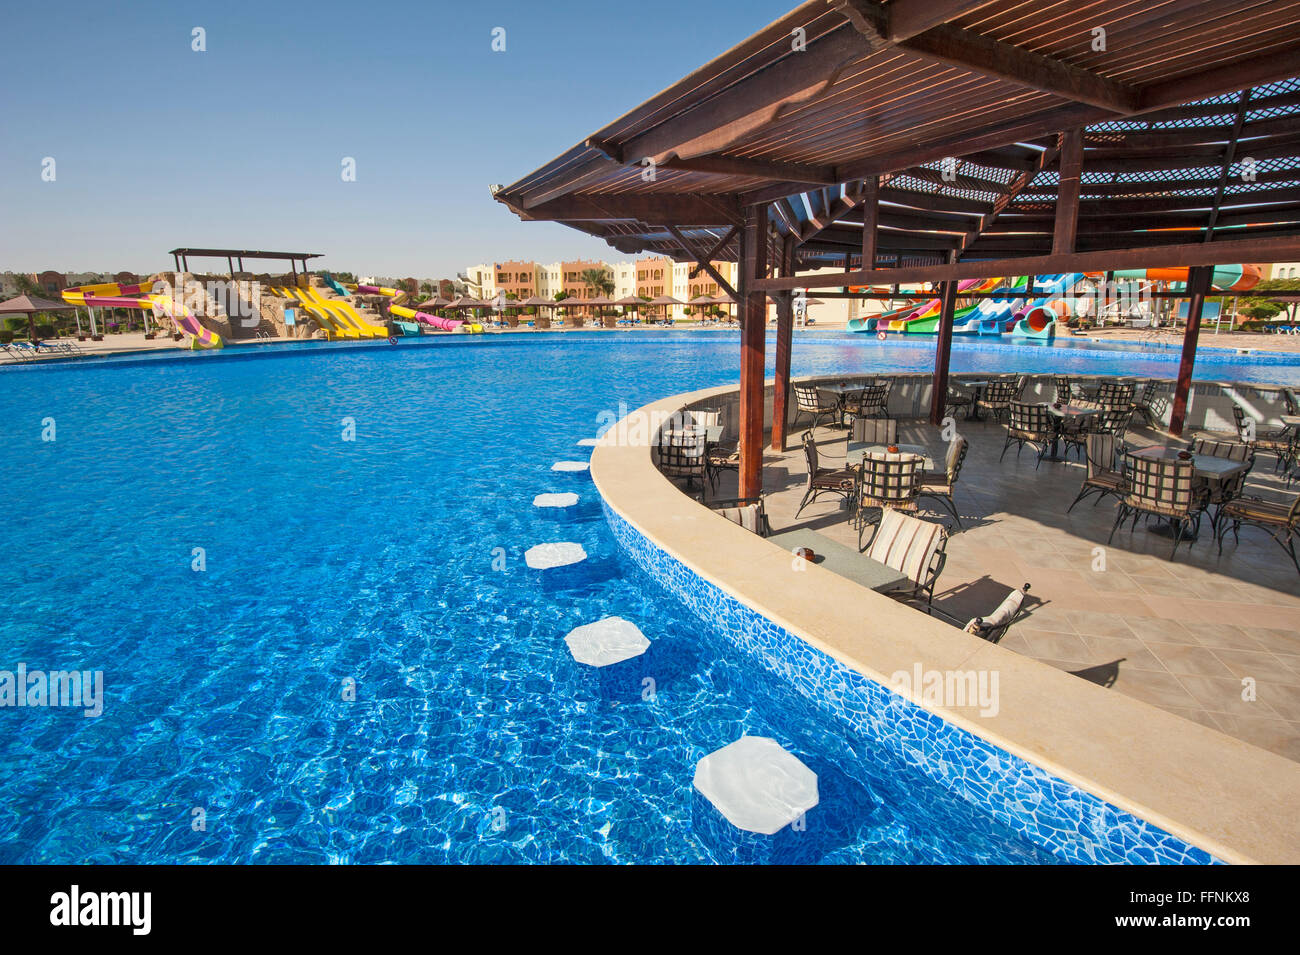 Großer Pool mit Bar in einem luxuriösen Hotel Tropical Resort Stockfoto